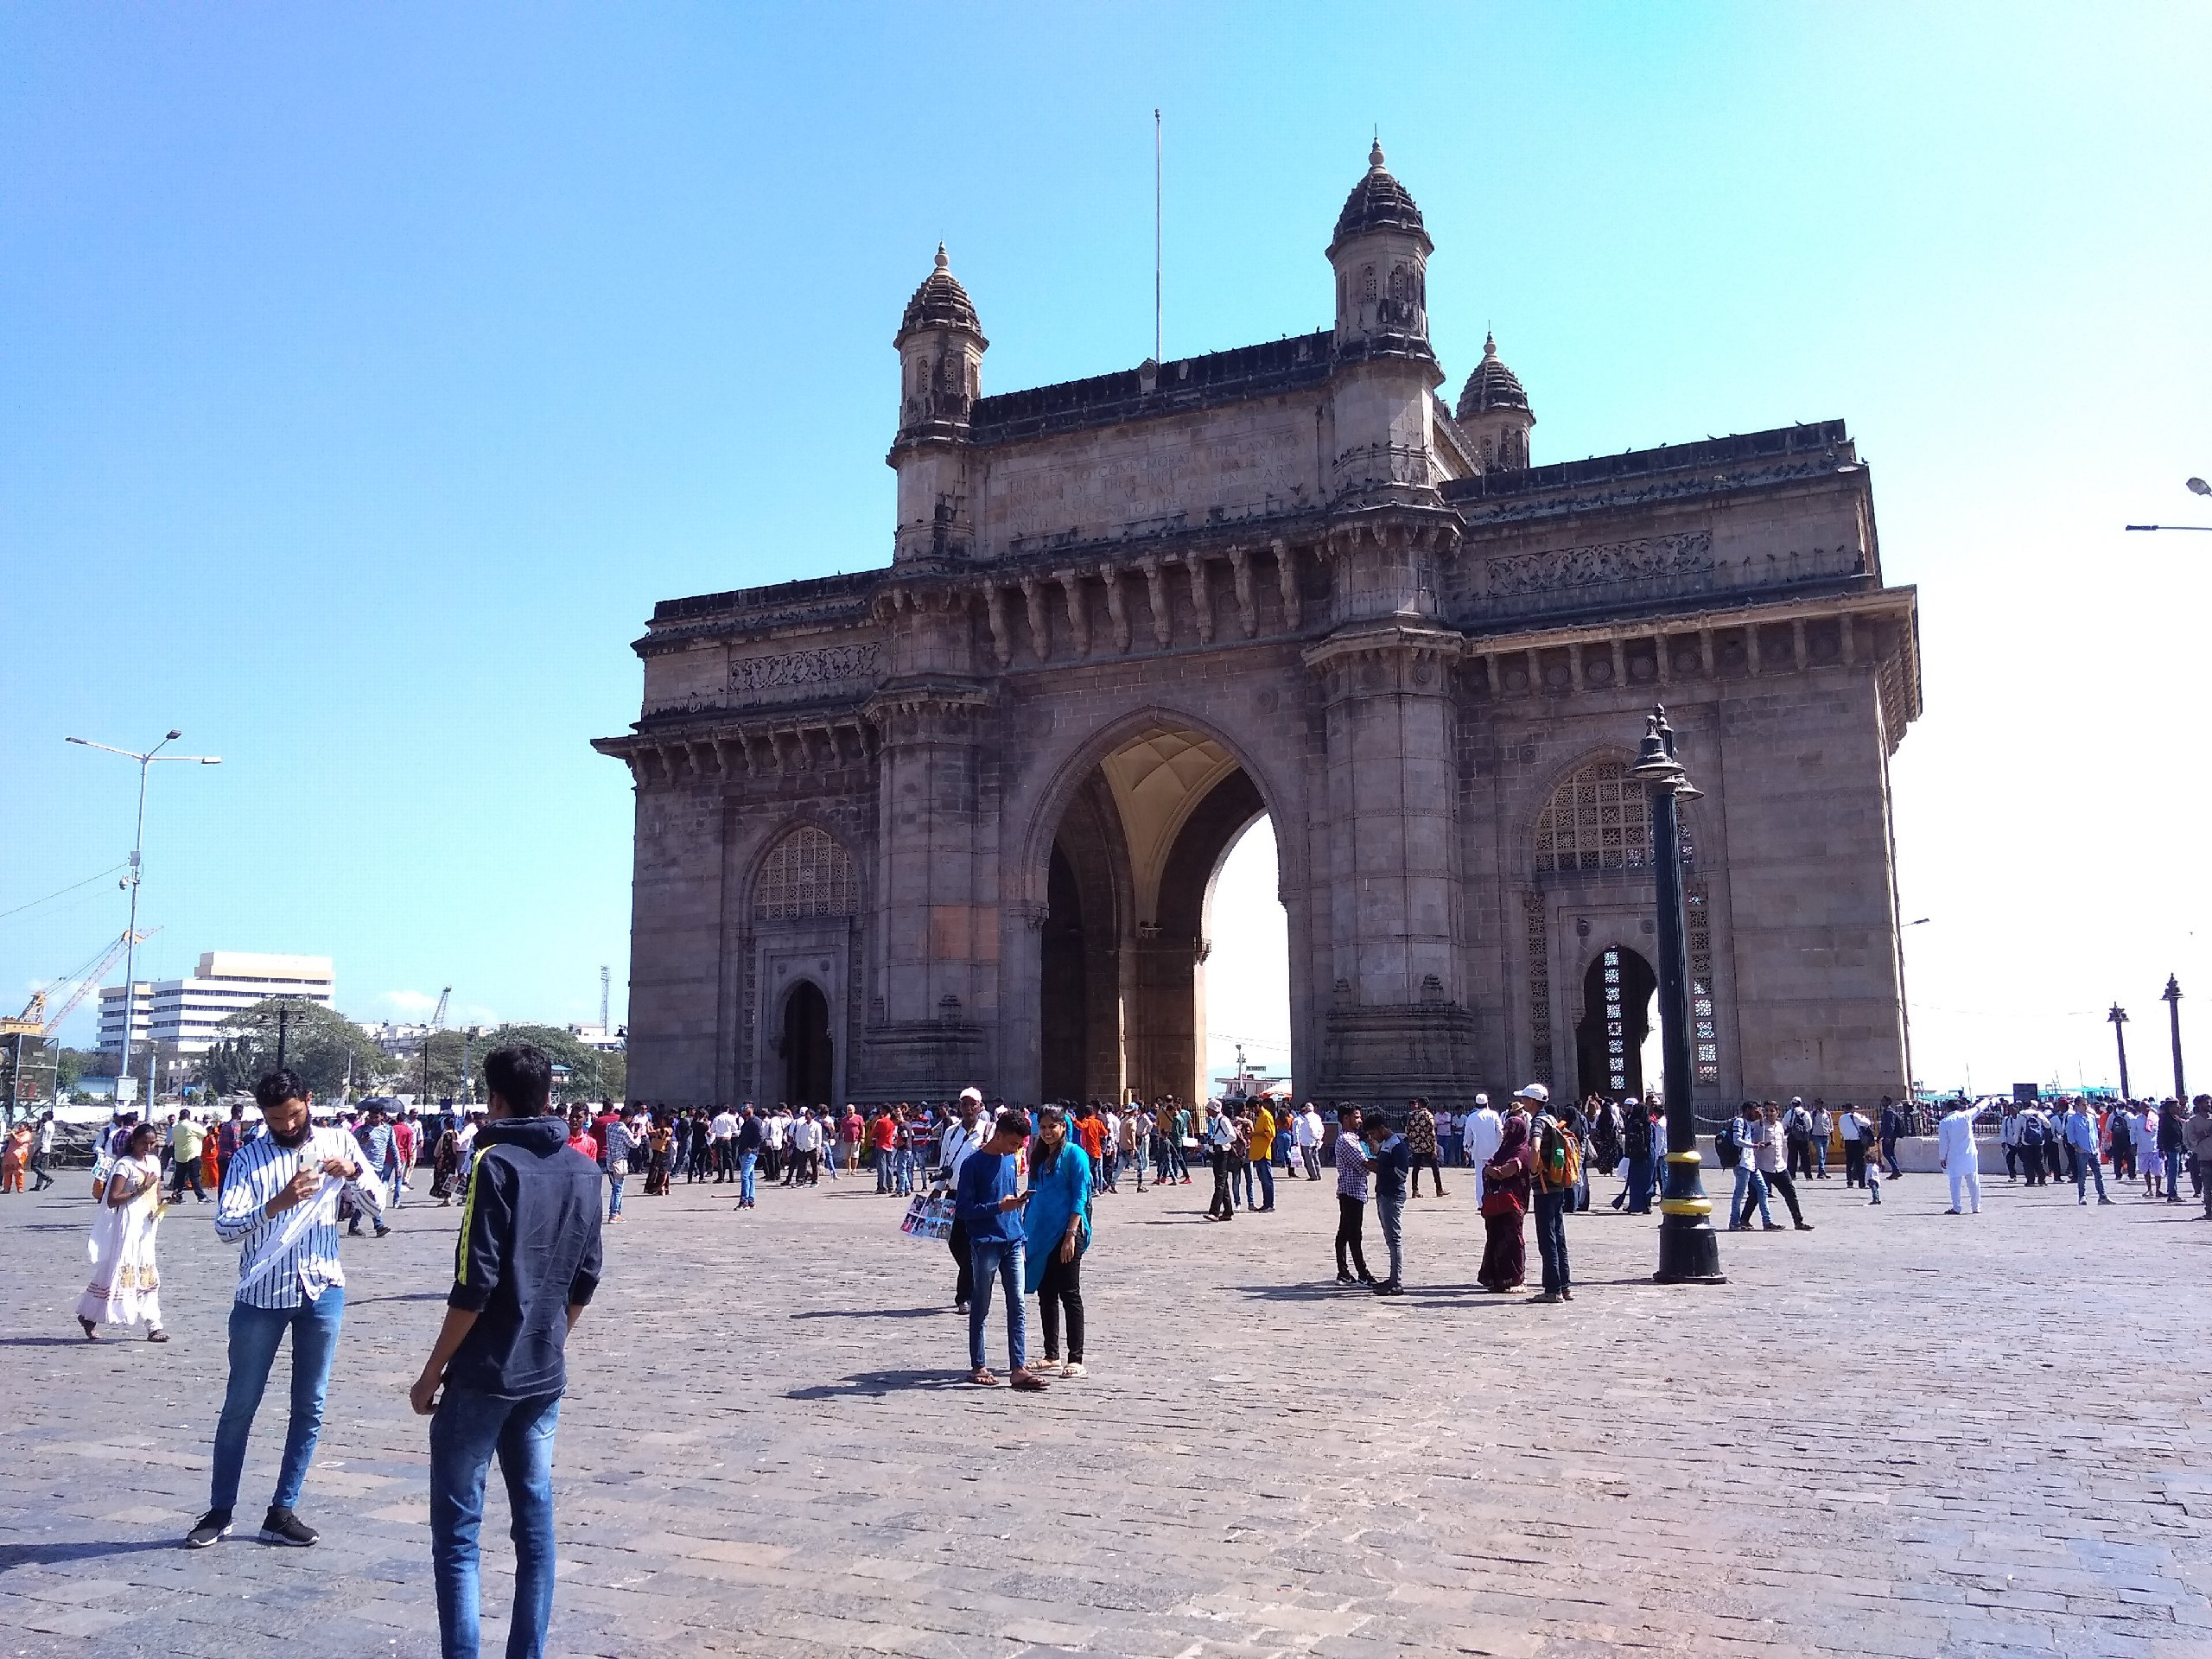 Ворота Индии были построены в 1924 году. Через эти ворота выходили английские солдаты после того, как Индия перестала быть колонией Великобритании и обрела независимость